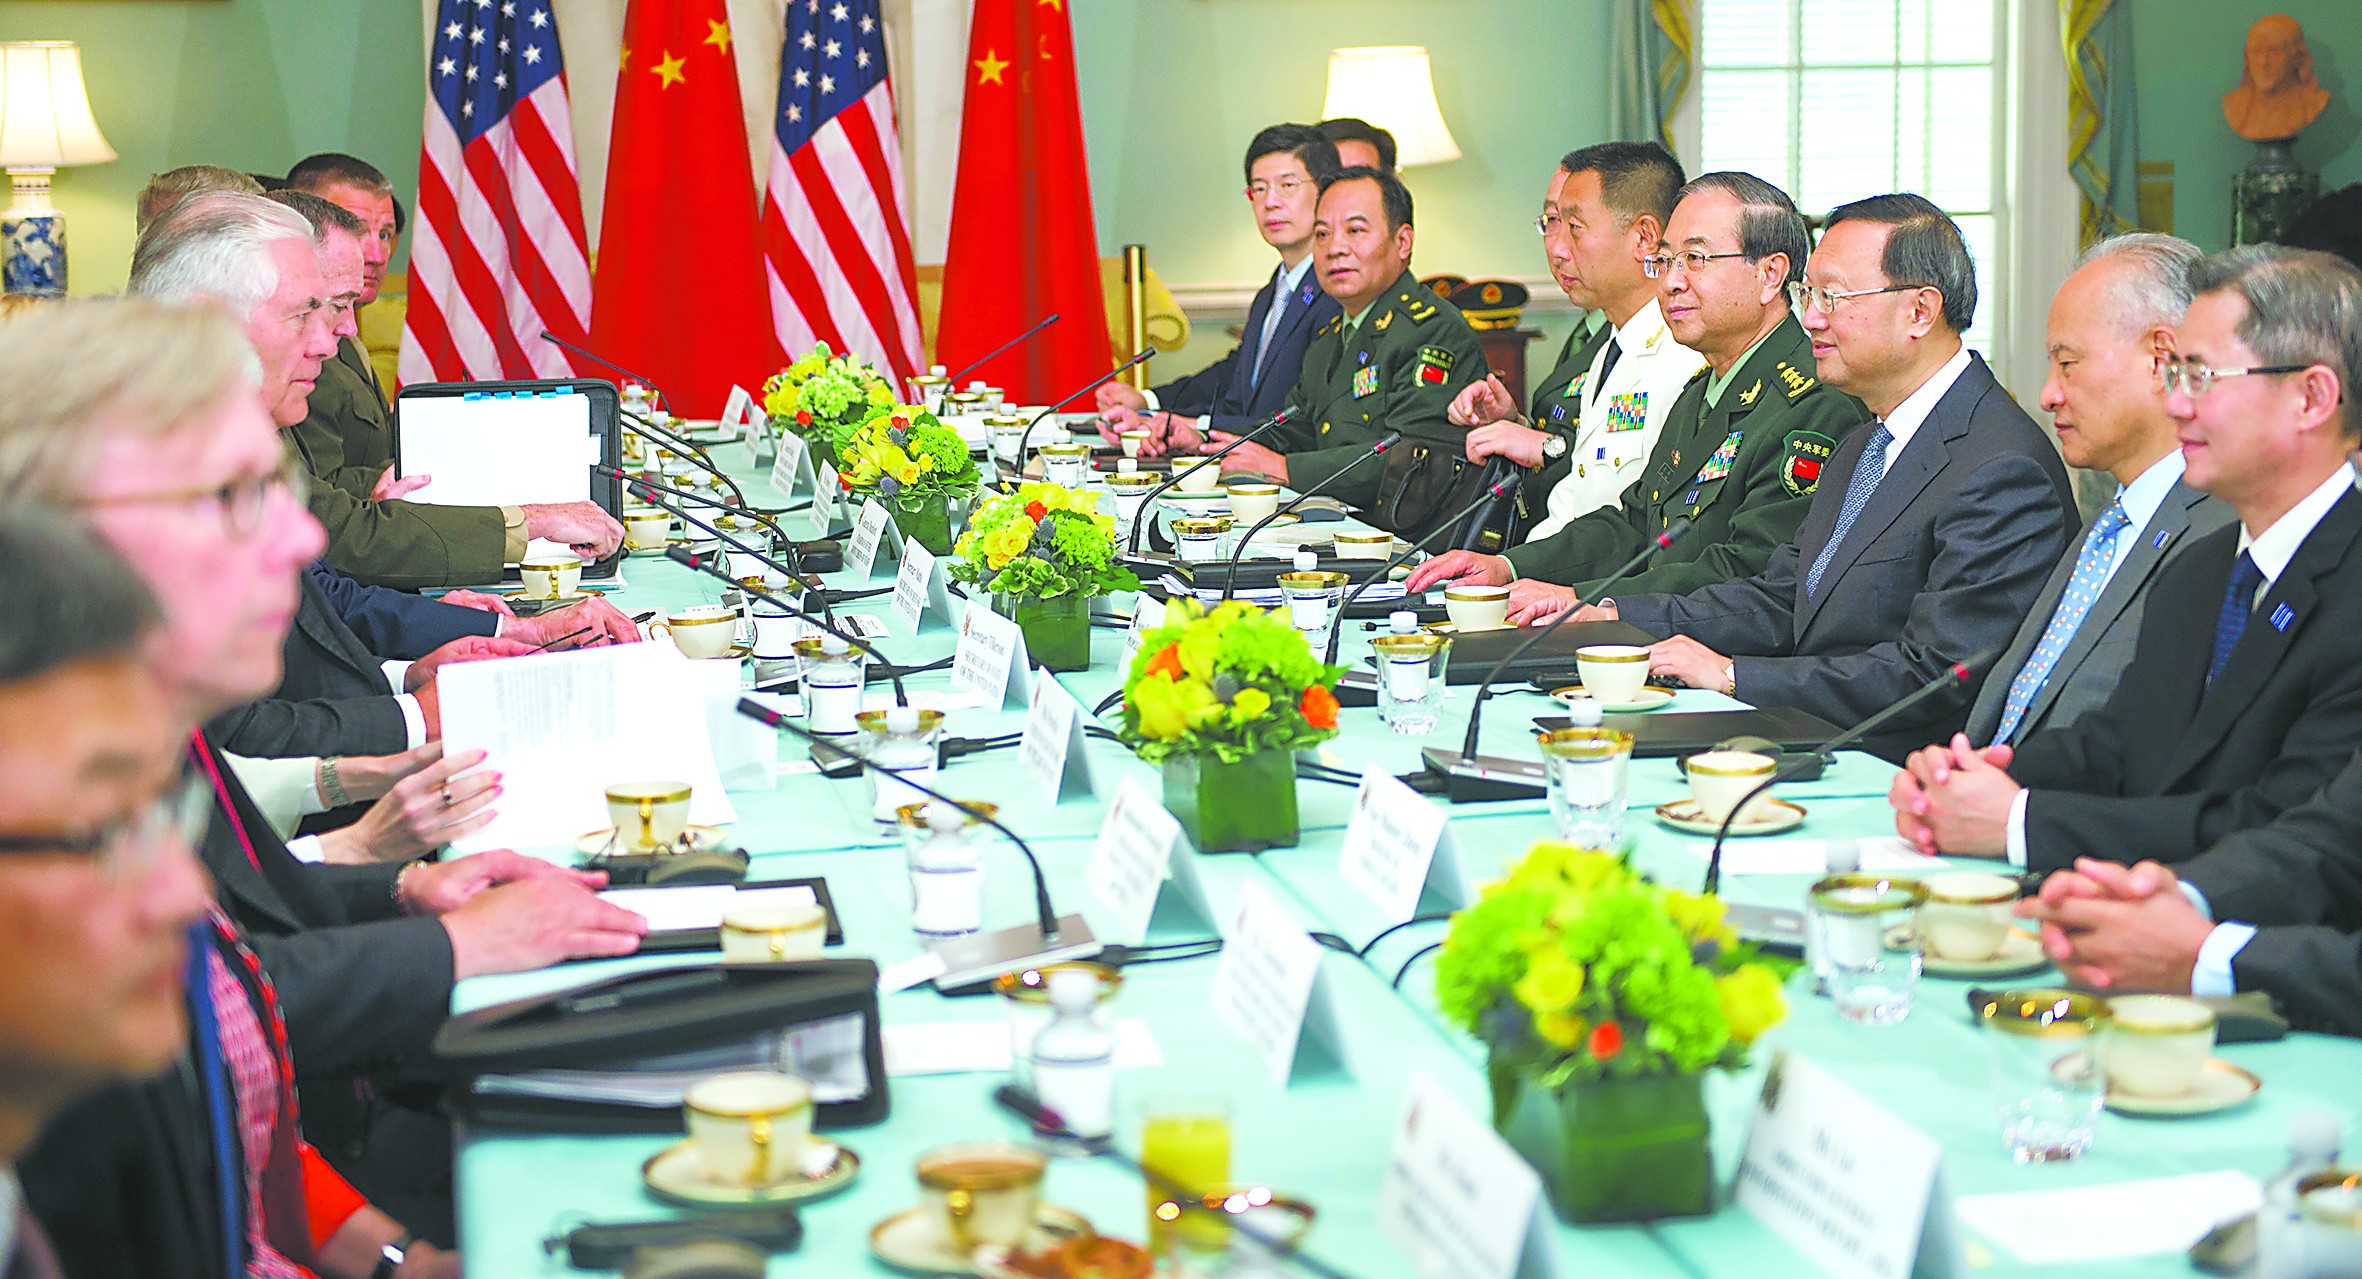 中美首轮外交安全对话开启 美称最高要务是朝核